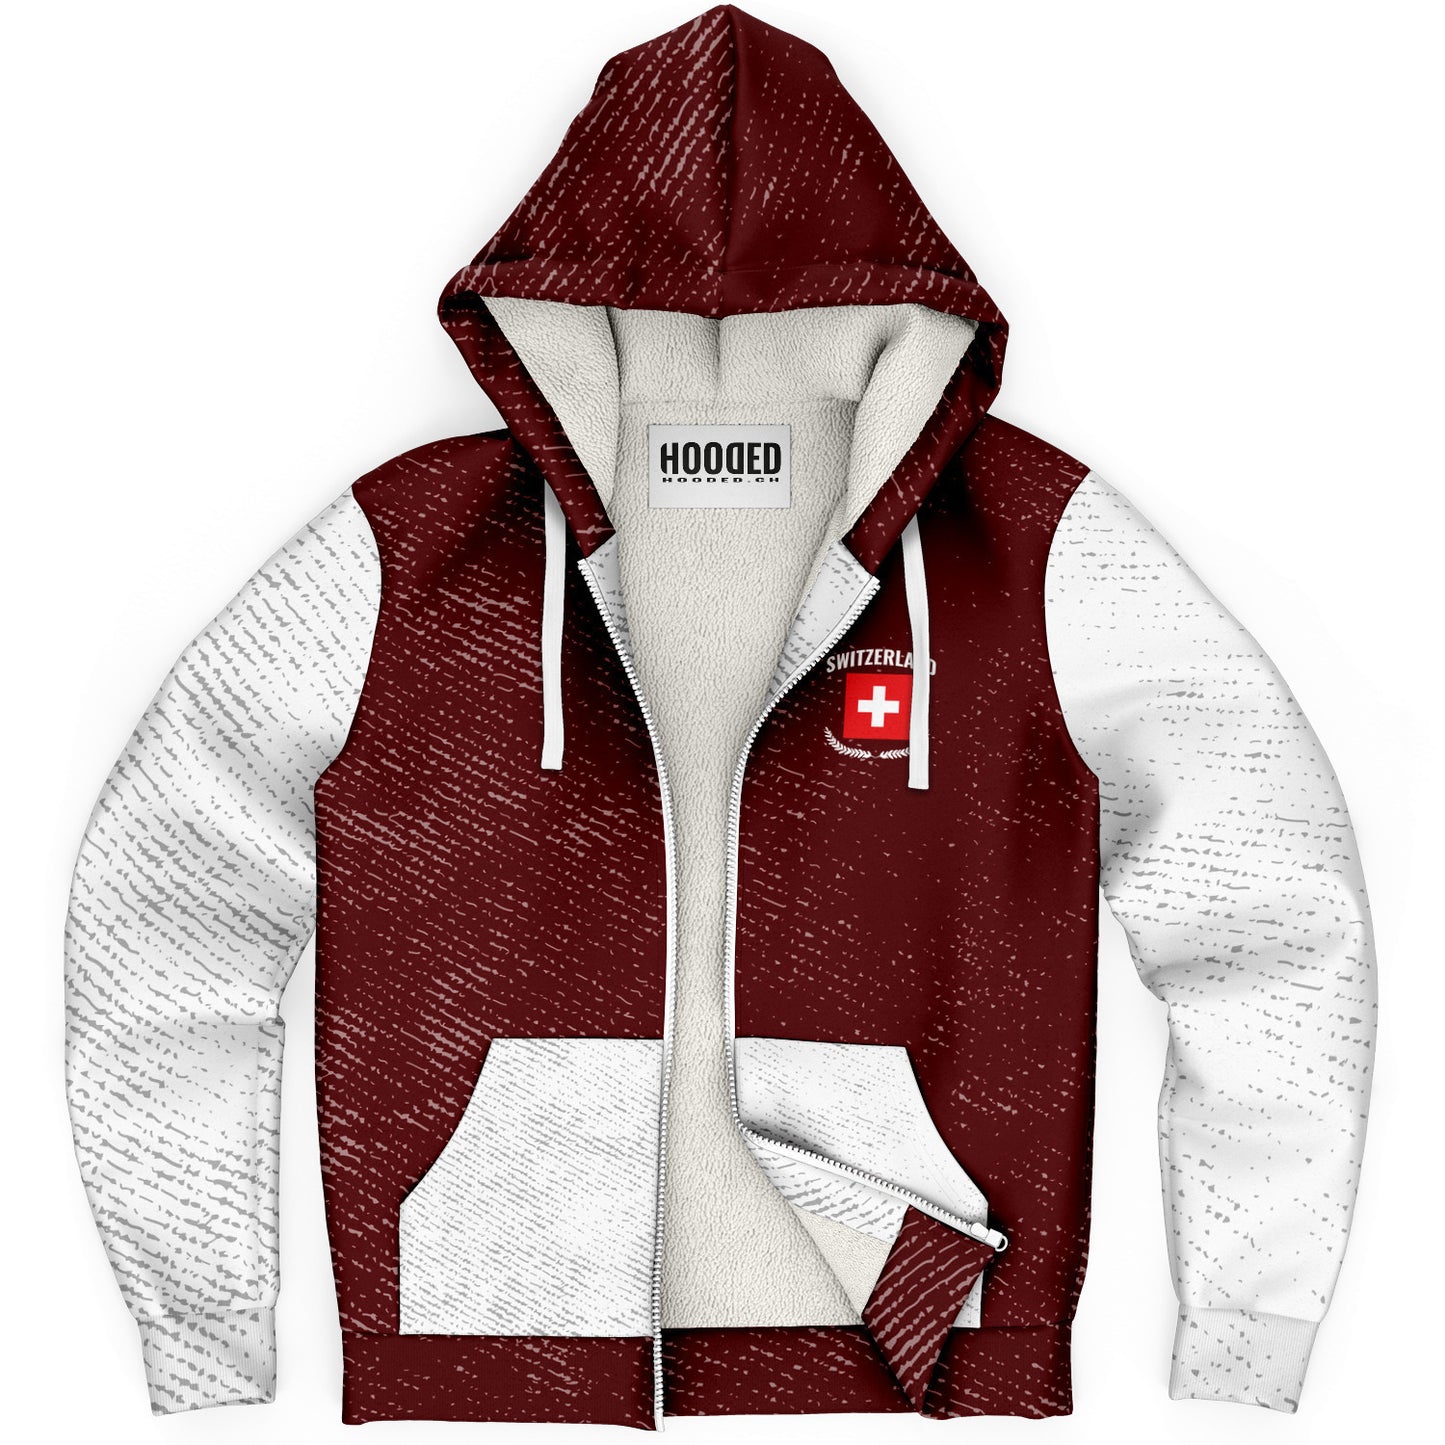 Deluxe hoodie jaquette - Switzerland